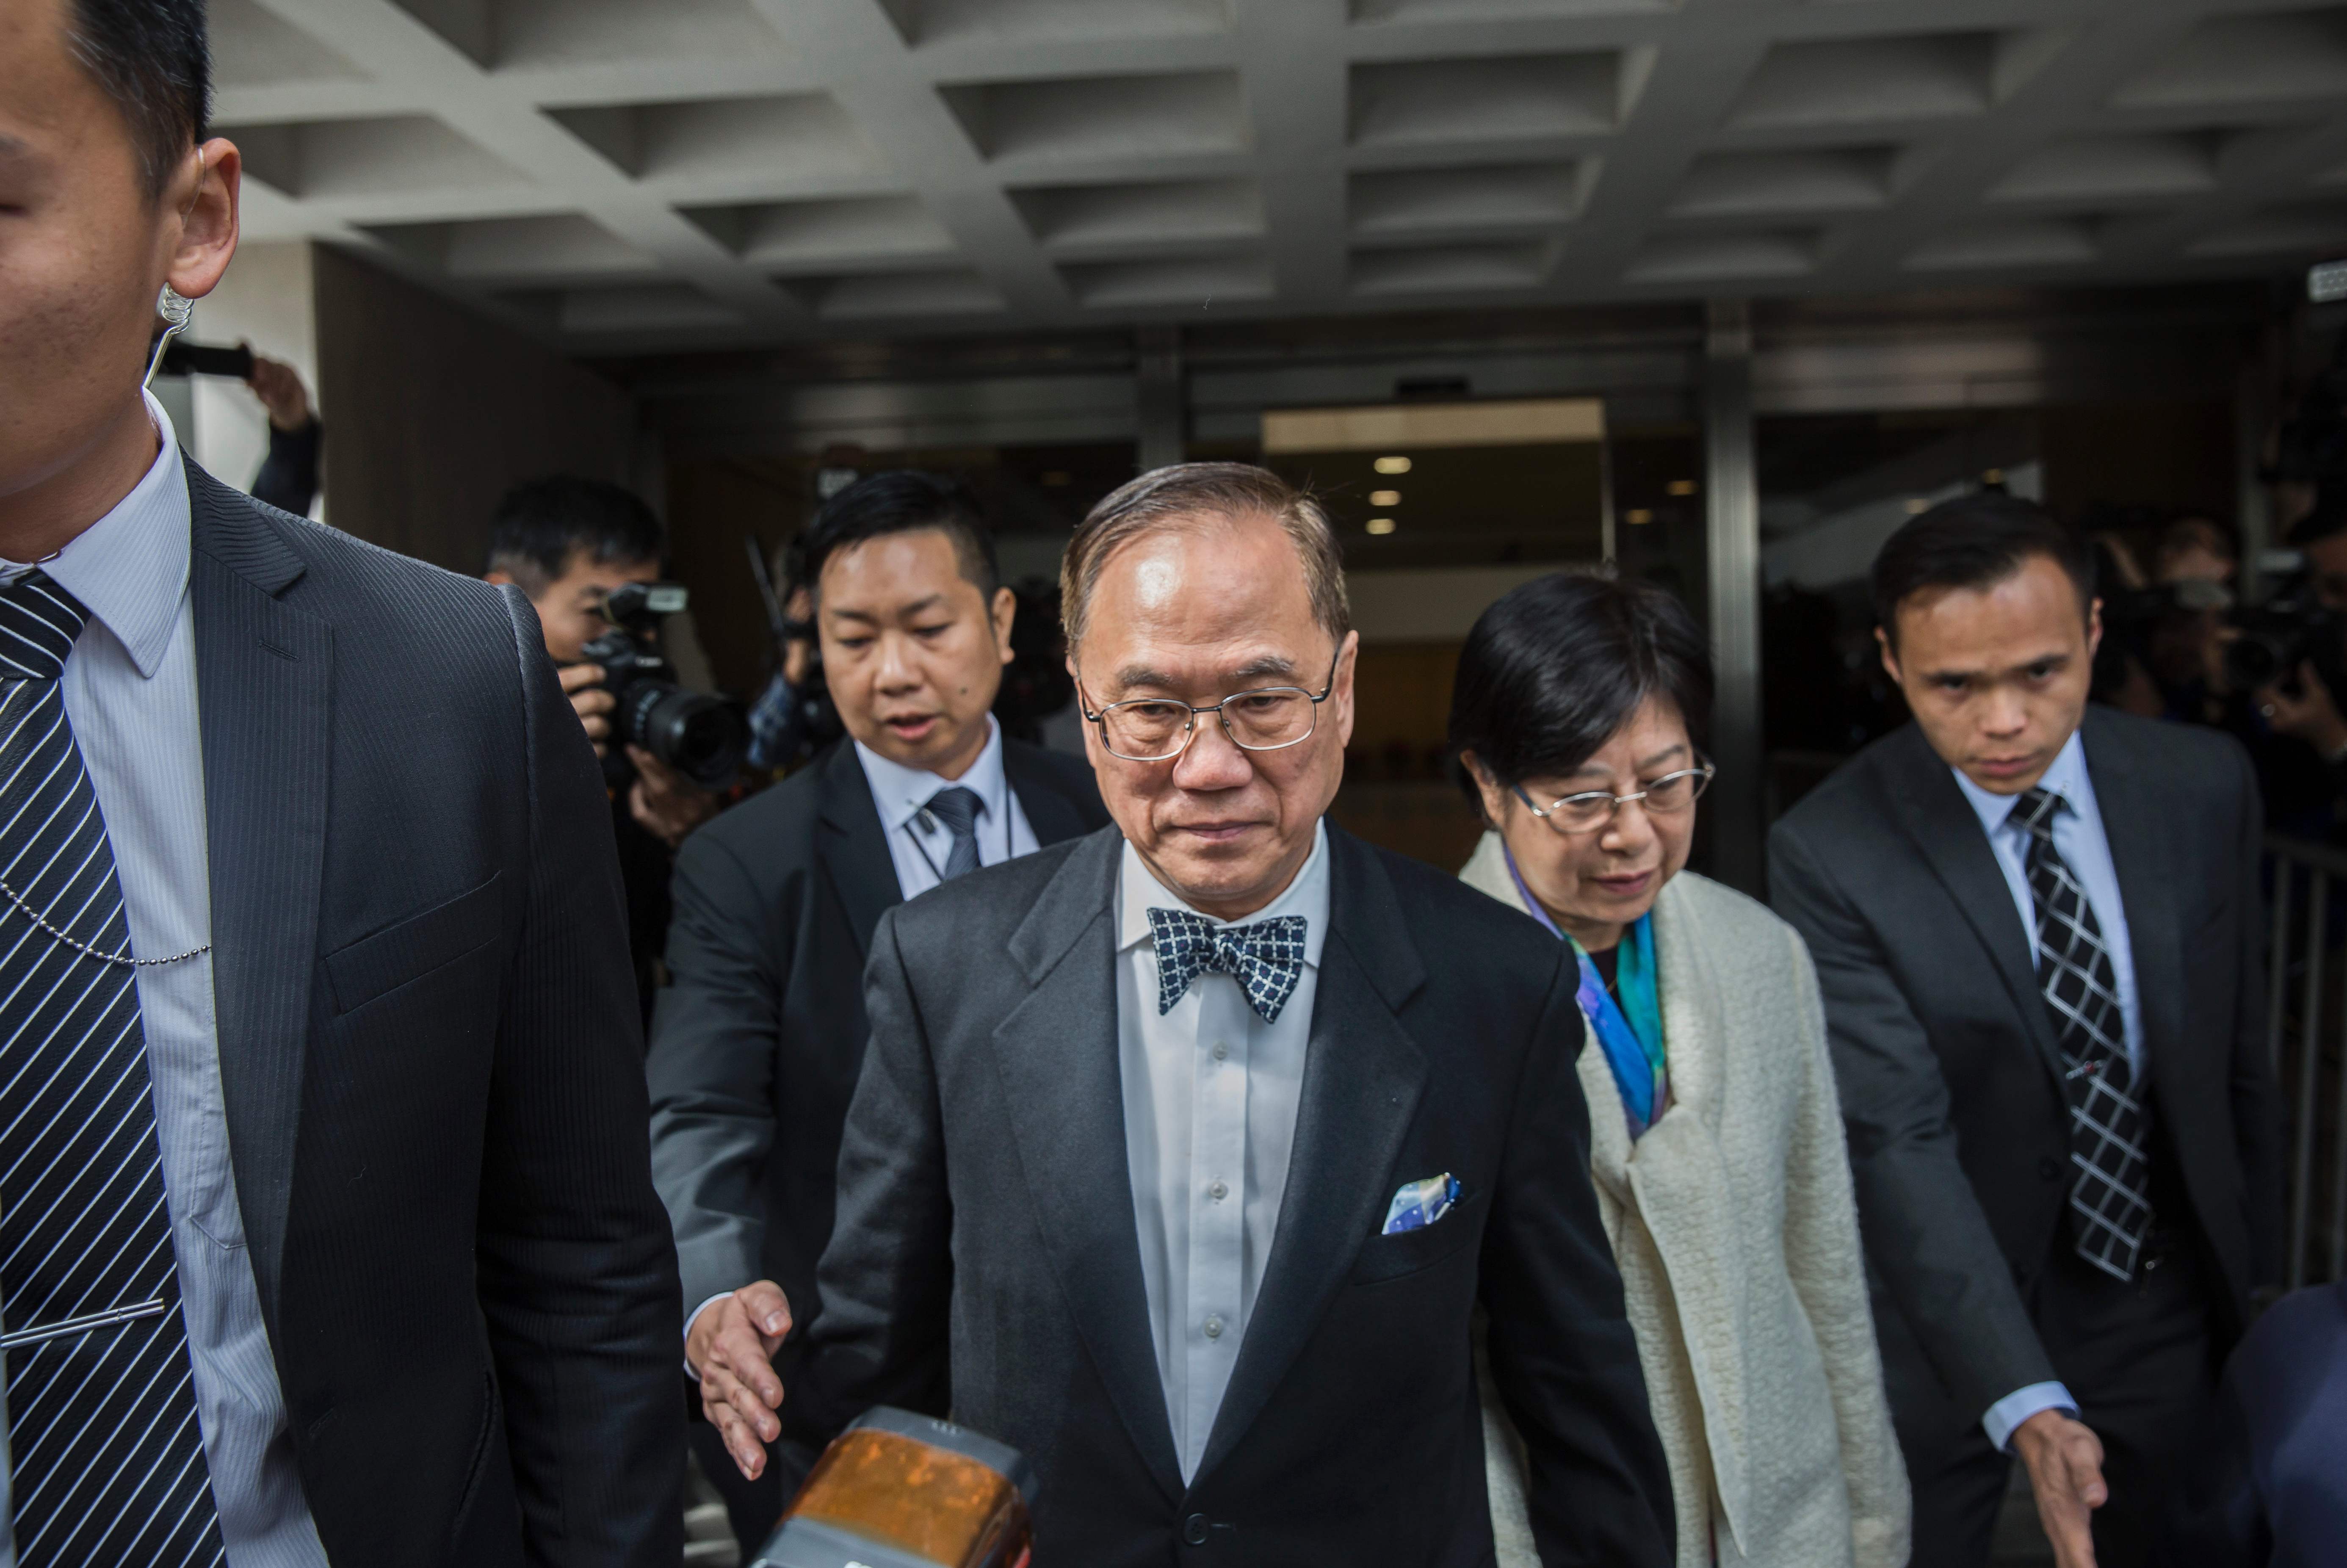 حرس رئيس هونج كونج السابق يرافقه للخروج من المحكمة